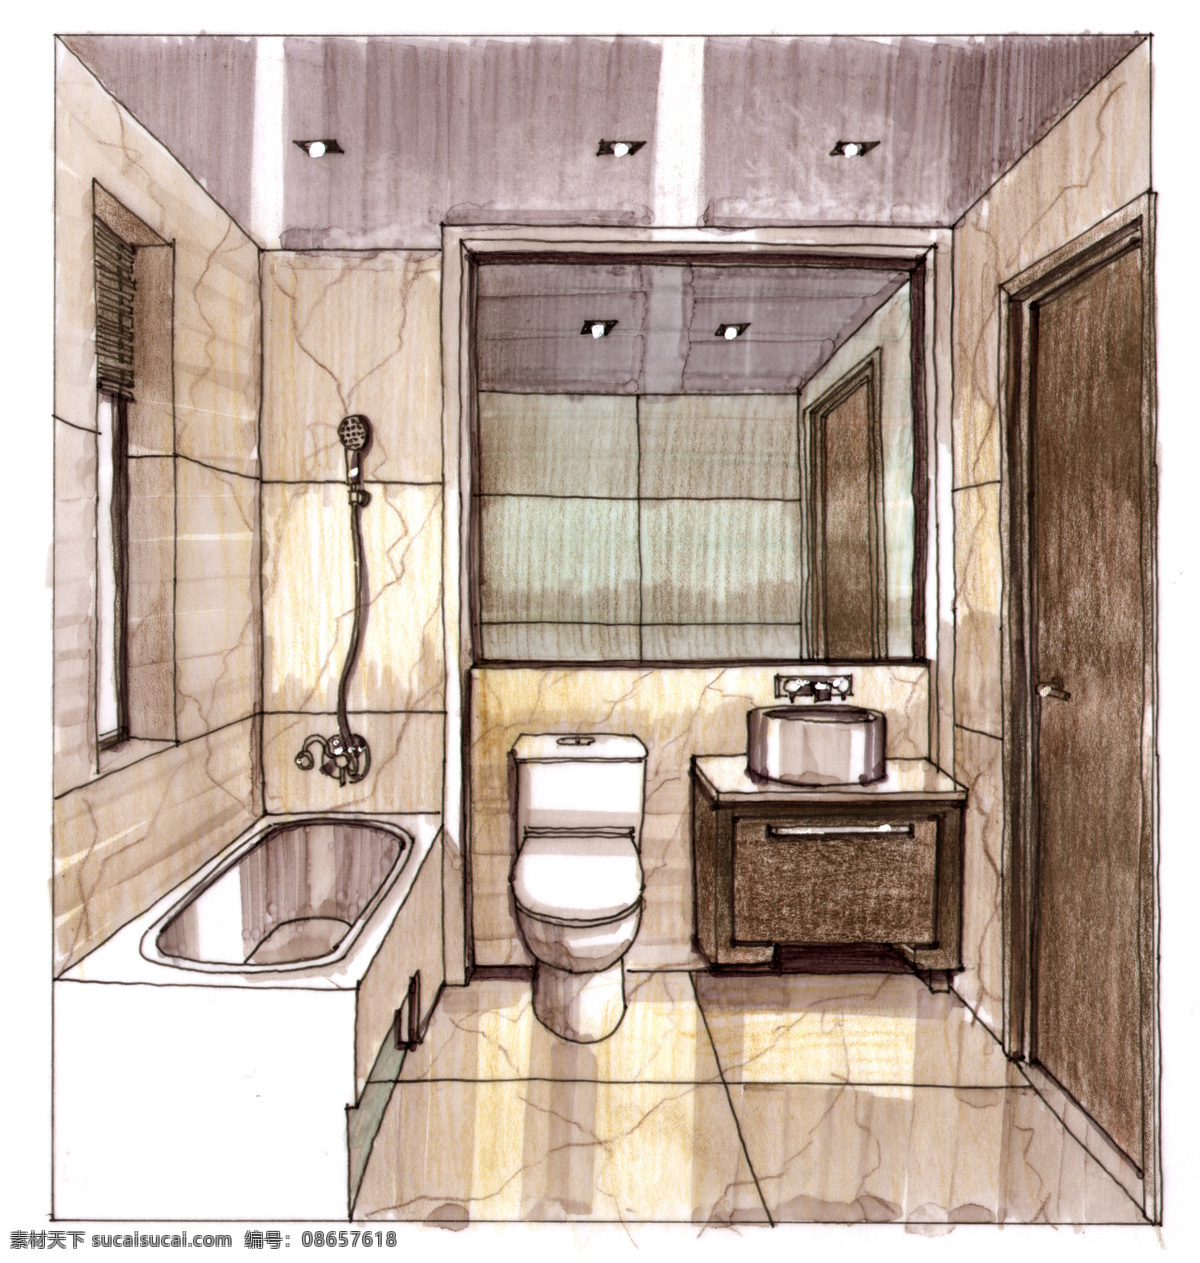 浴室 透视图 手绘 3d建筑 绘画 建筑效果图 模型 室内设计 手绘建筑 素描 线描 效果图 模板下载 室内 建筑 家居装饰素材